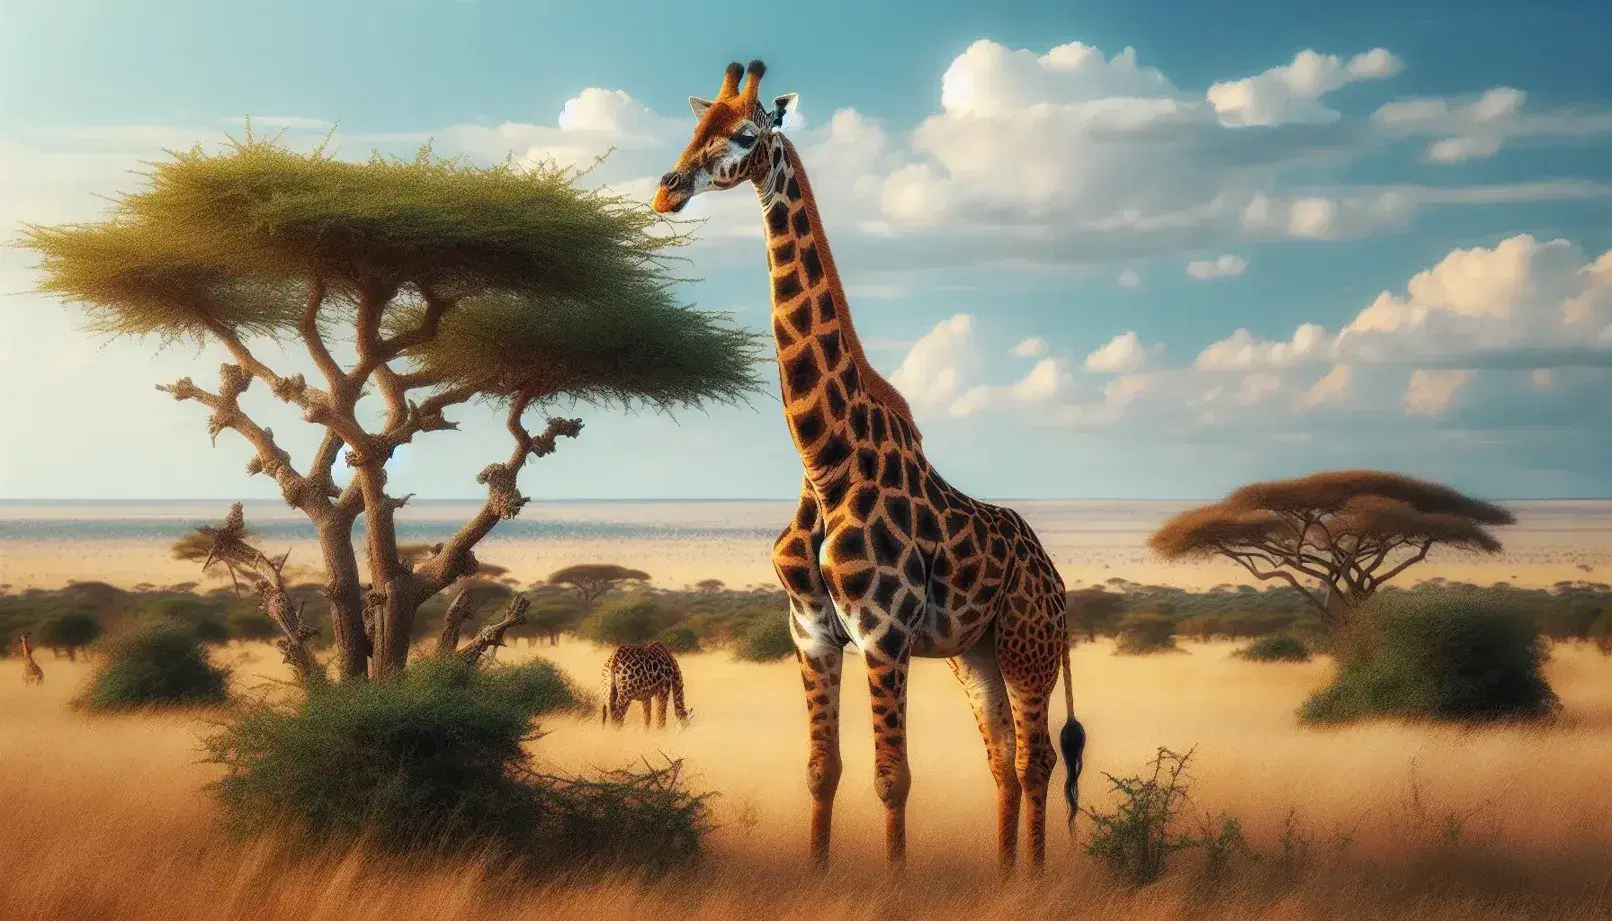 Jirafa adulta alimentándose de un árbol de acacia en la sabana africana, con una cría a su lado y fondo de cielo azul con nubes.